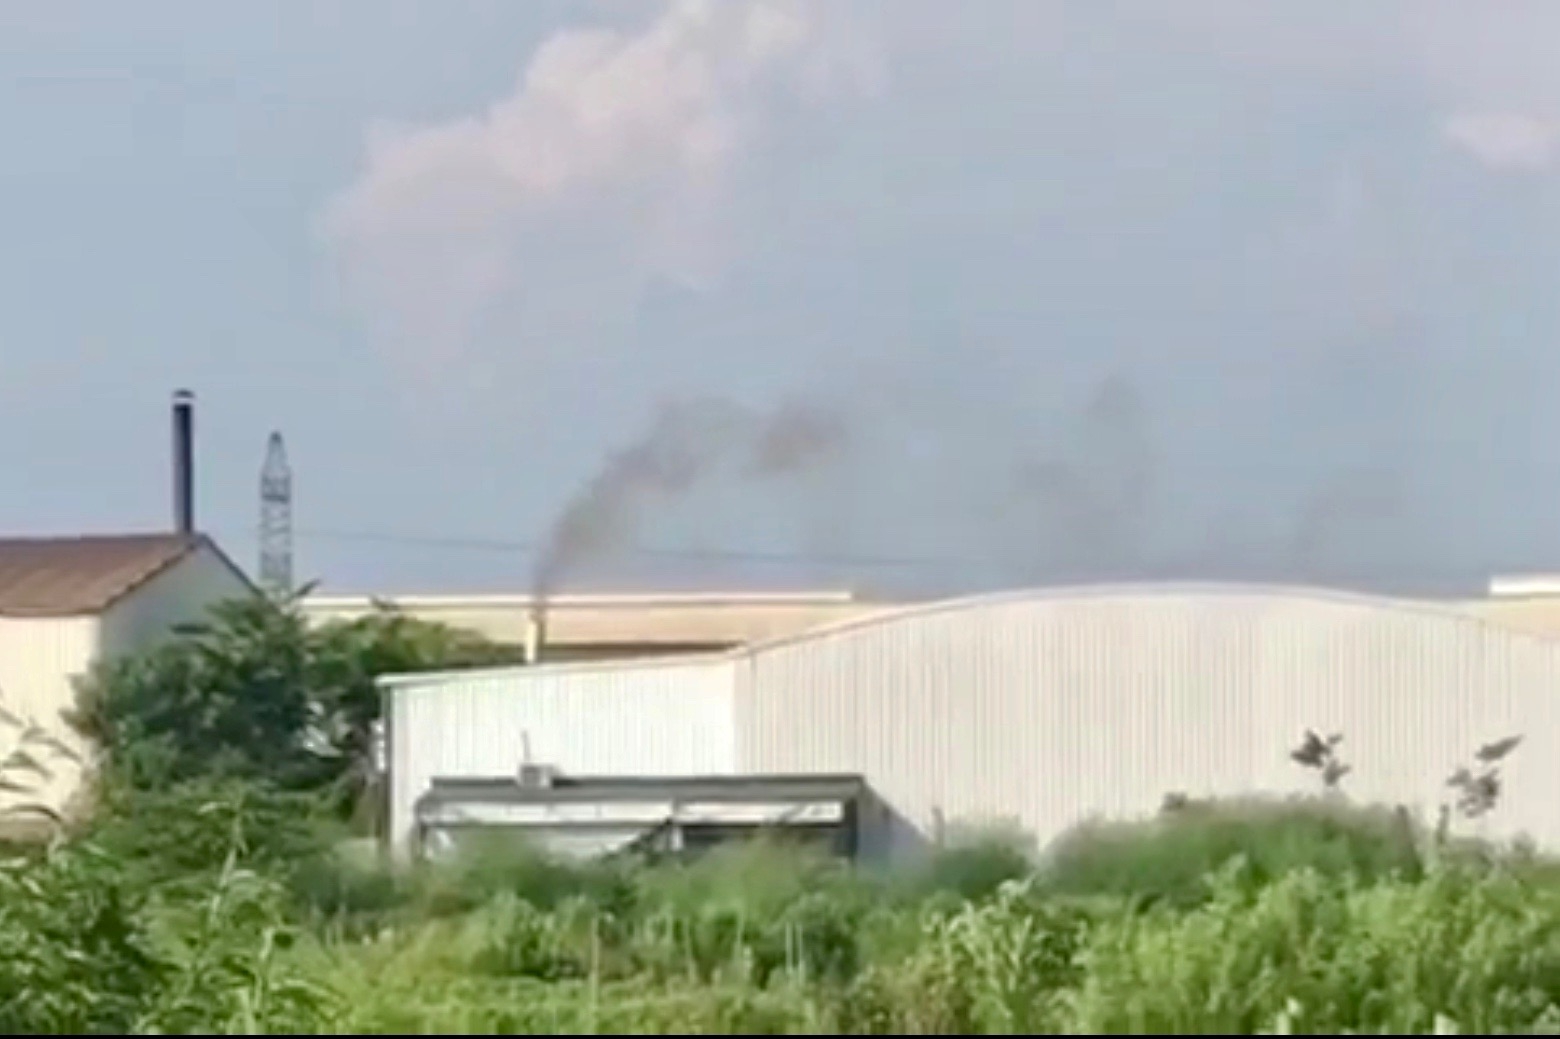 Huyện Mê Linh, Hà Nội: Người dân “than khổ” vì cụm nhà xưởng xả khói gây ô nhiễm